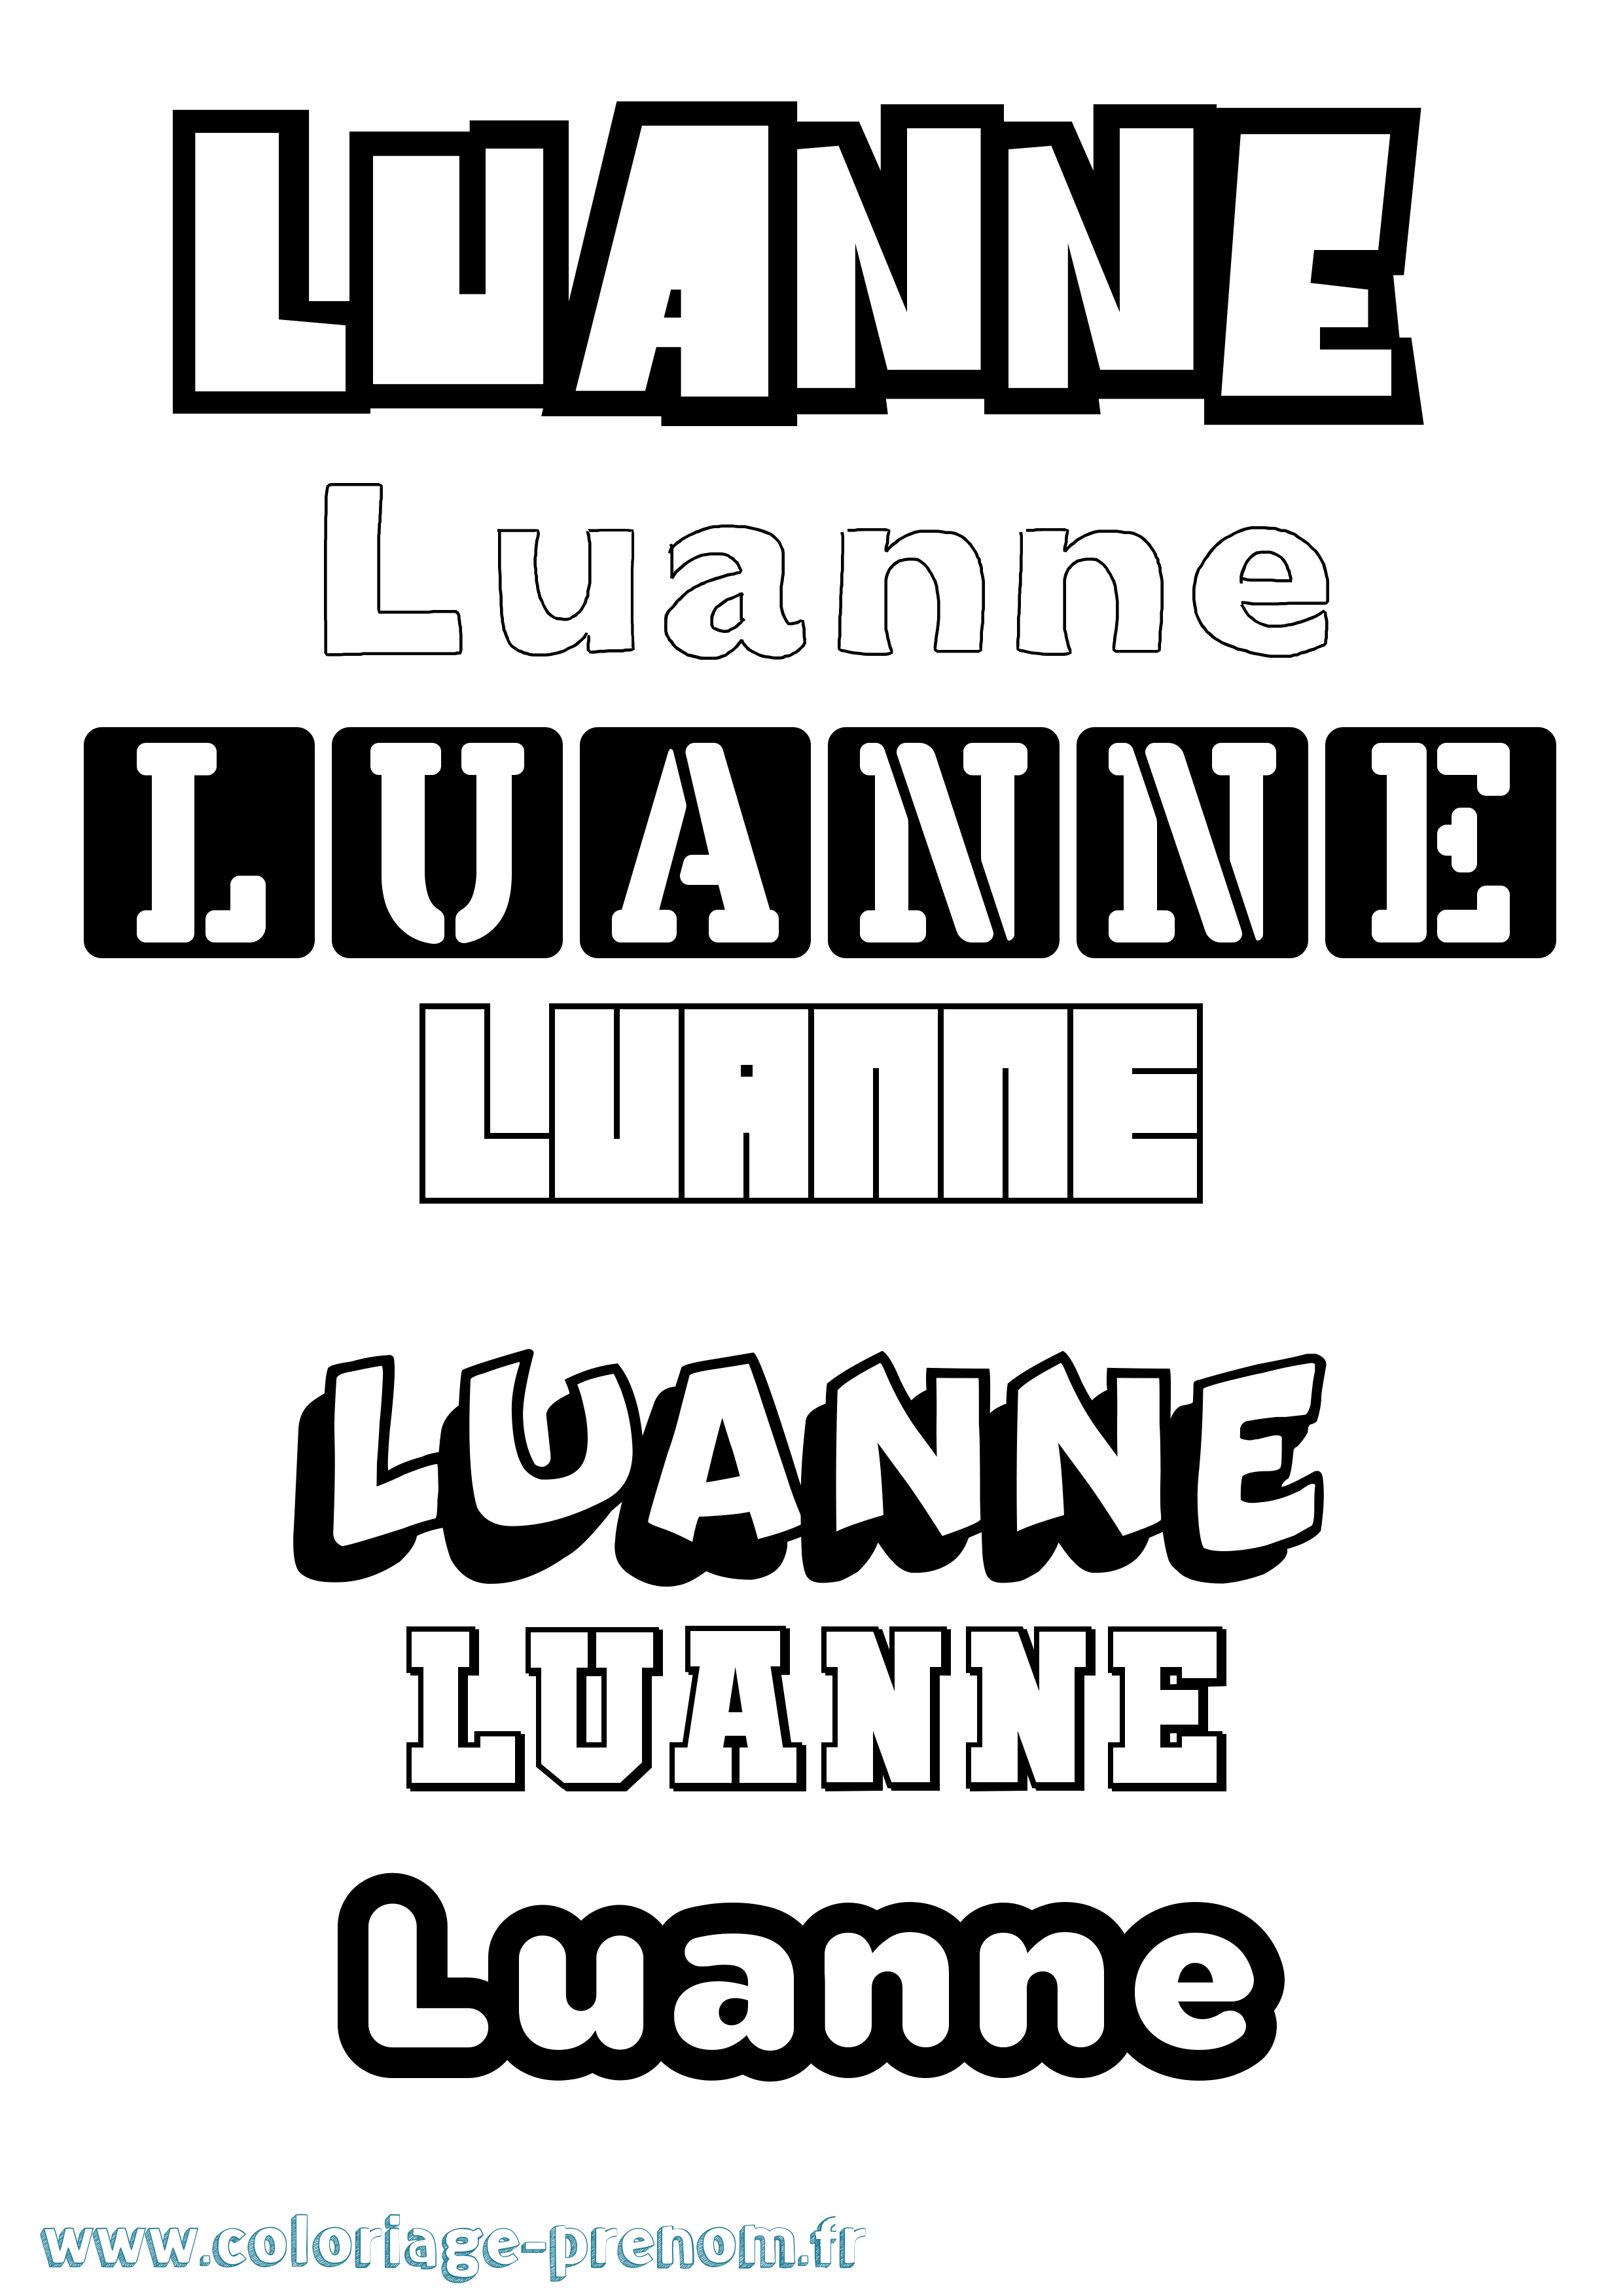 Coloriage prénom Luanne Simple